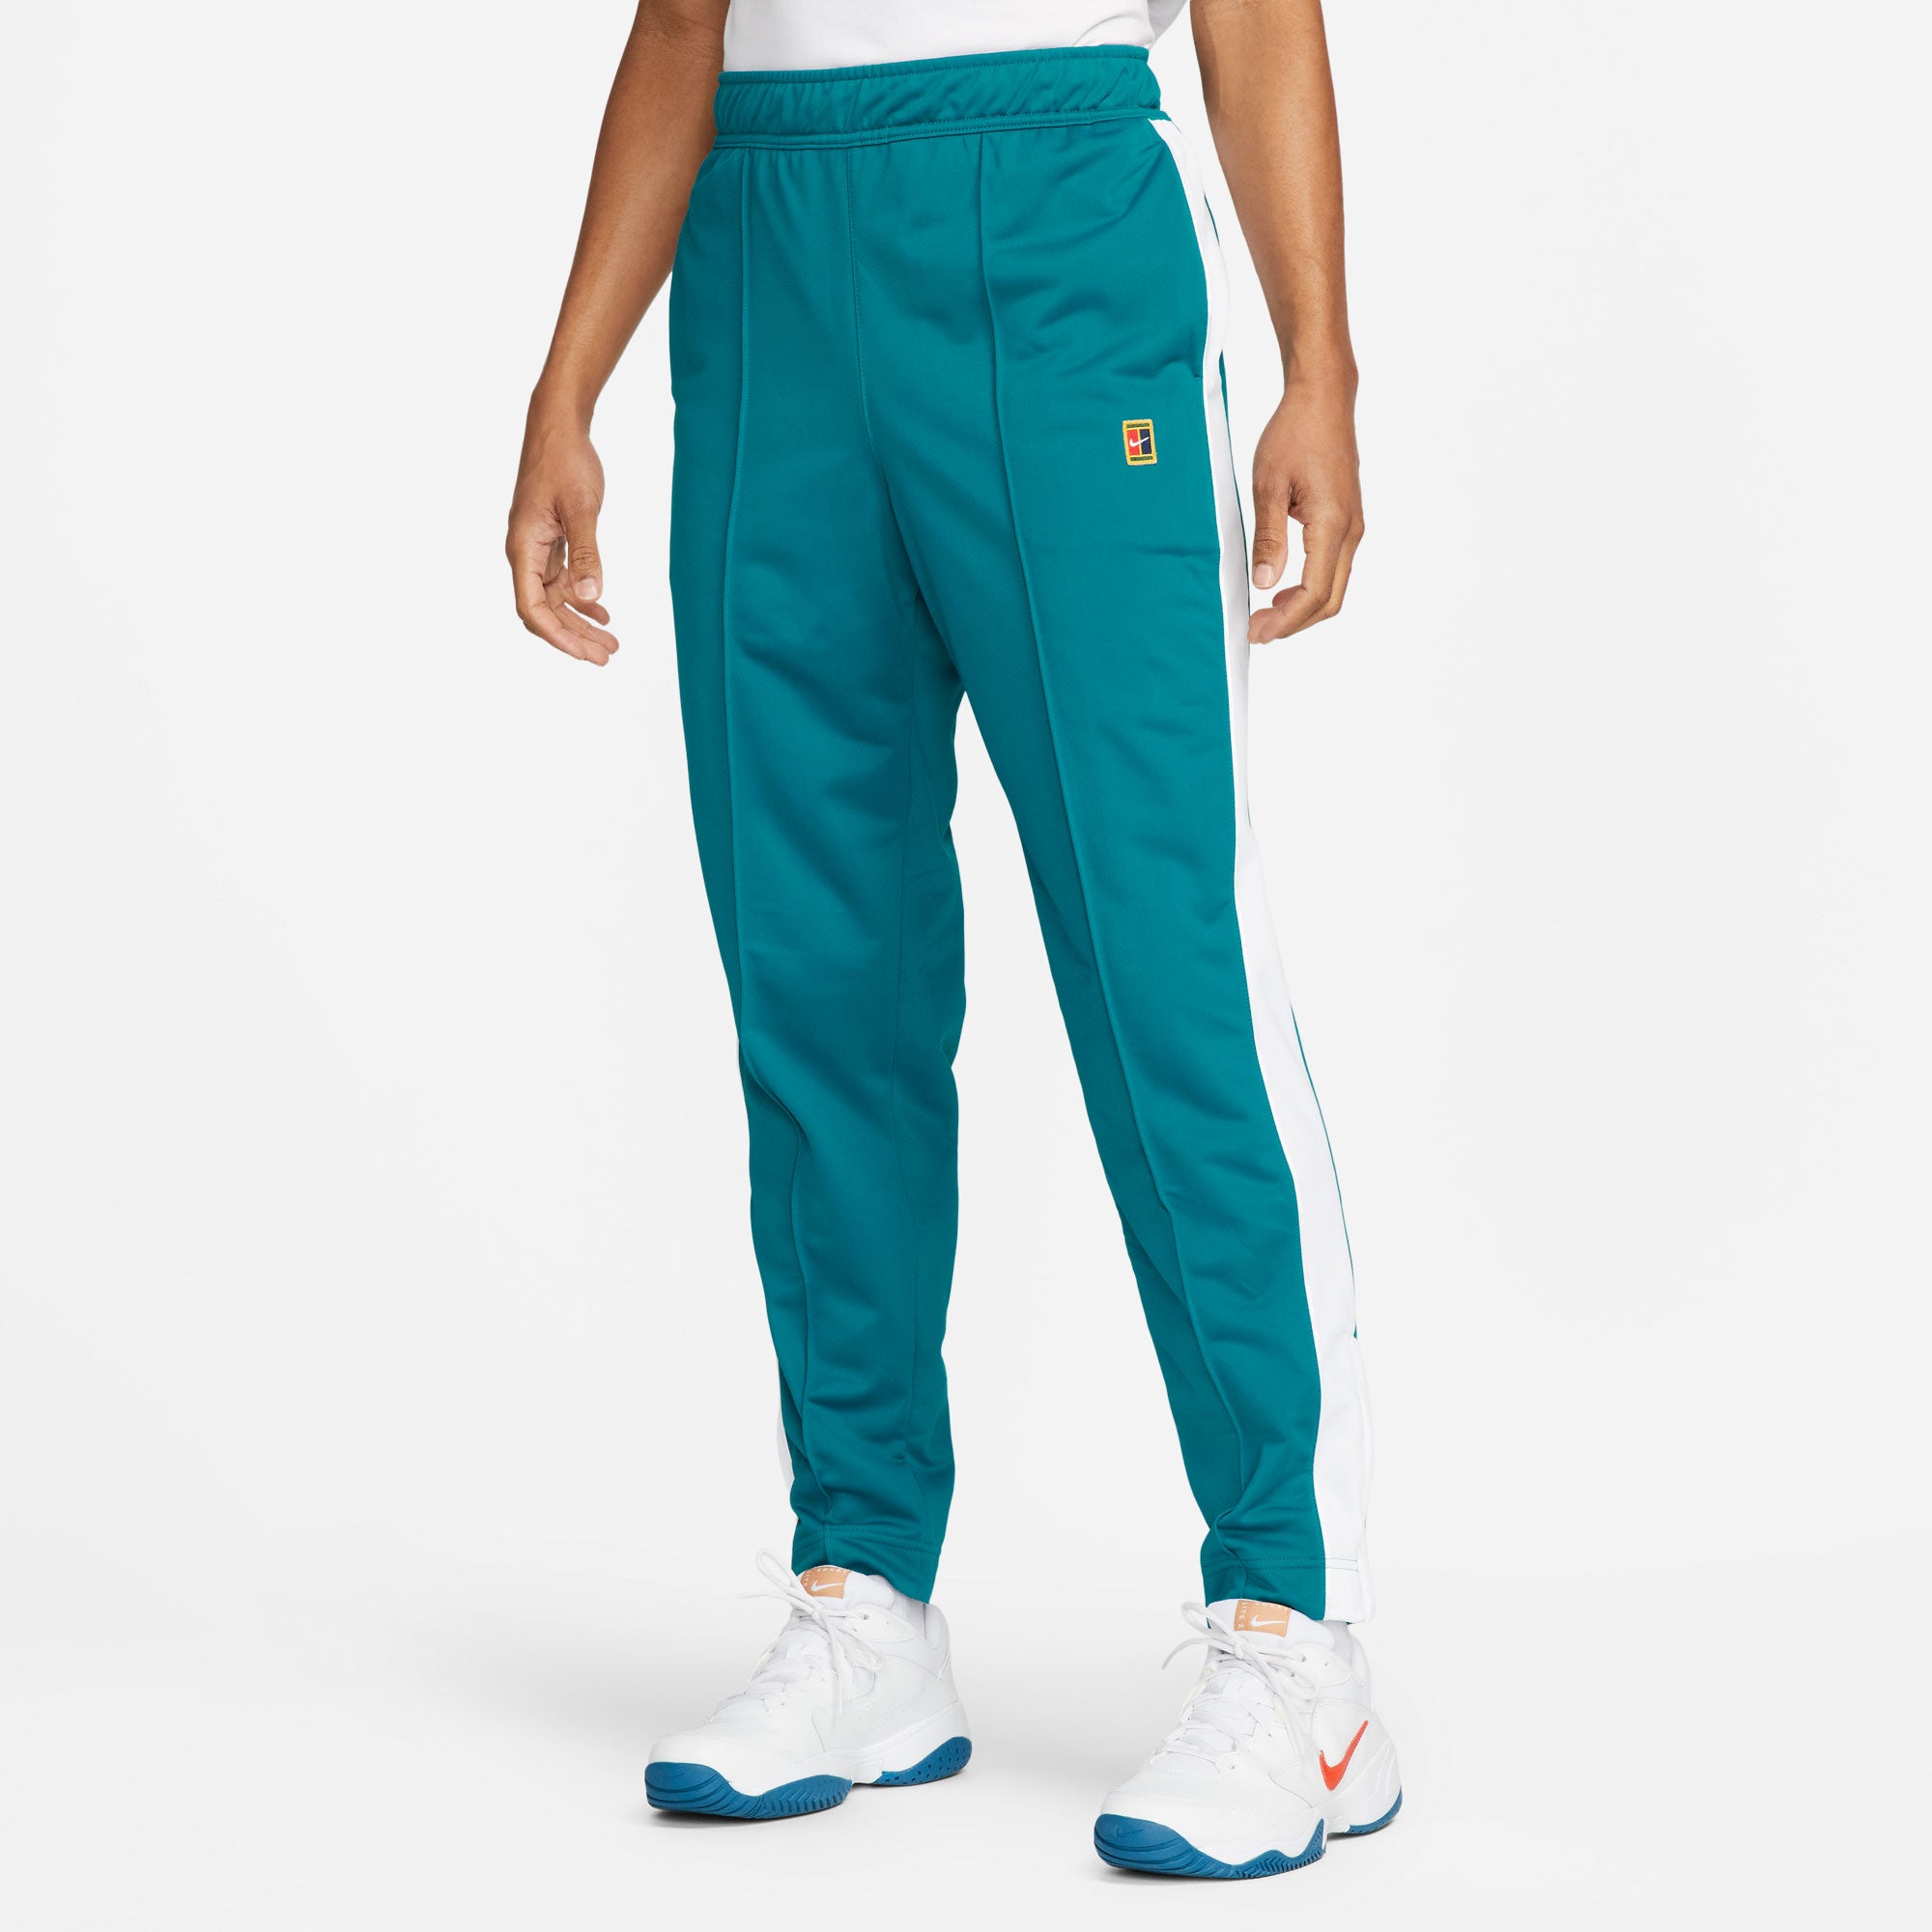 NikeCourt Heritage Men's Tennis Pants Green (1)